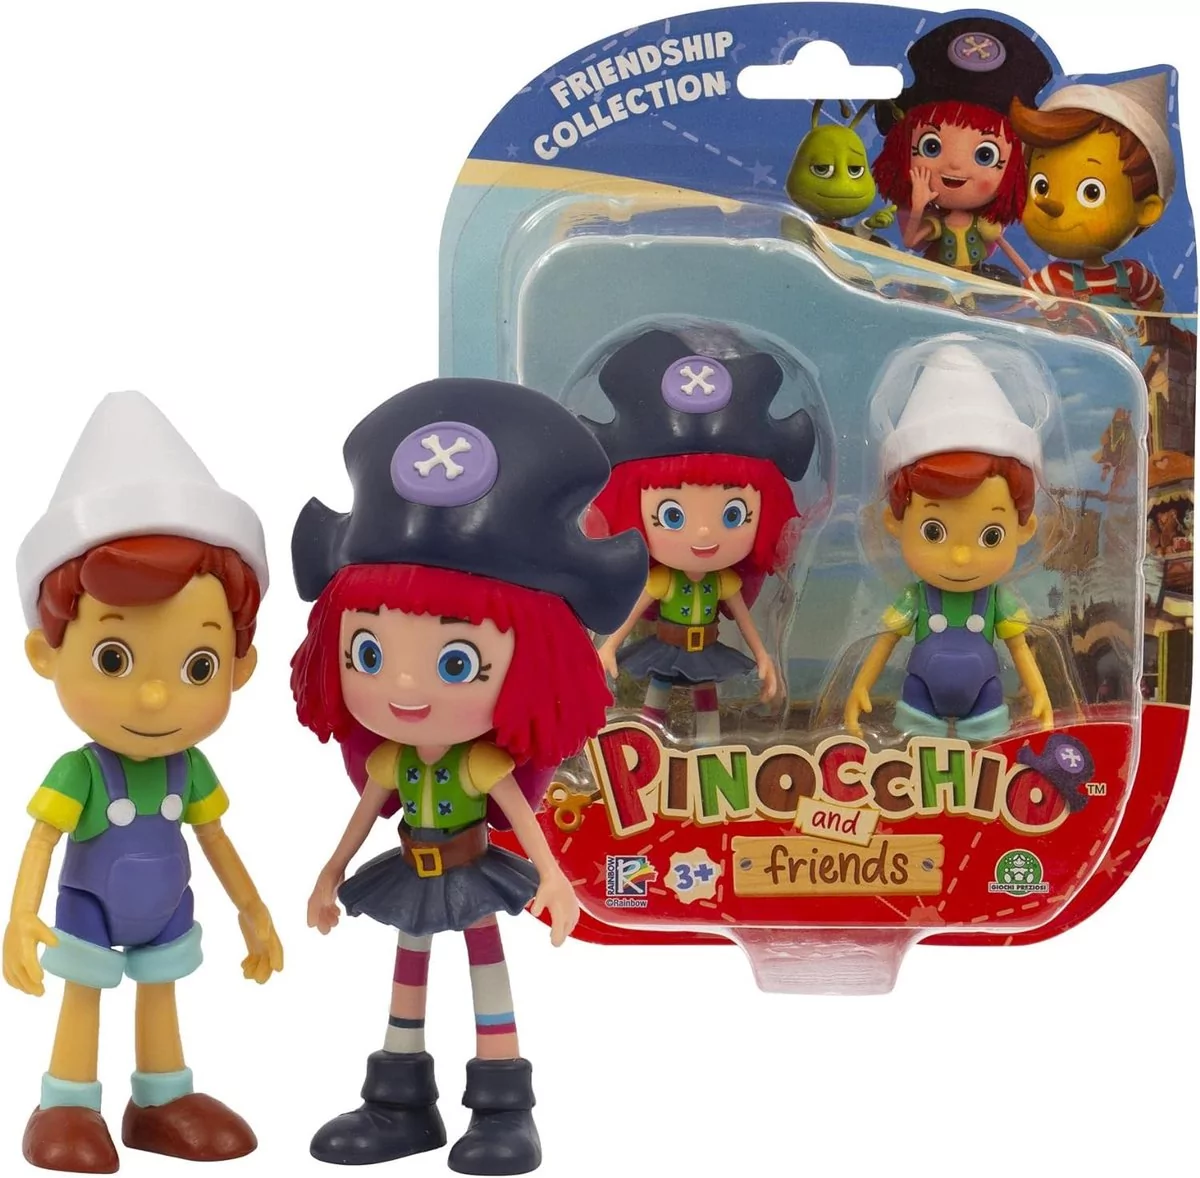 Zestaw 2 figurek z bohaterami z bajki Pinokio wysoka jakość dbałość o szczegóły idealne na prezent dla dziecka 3+